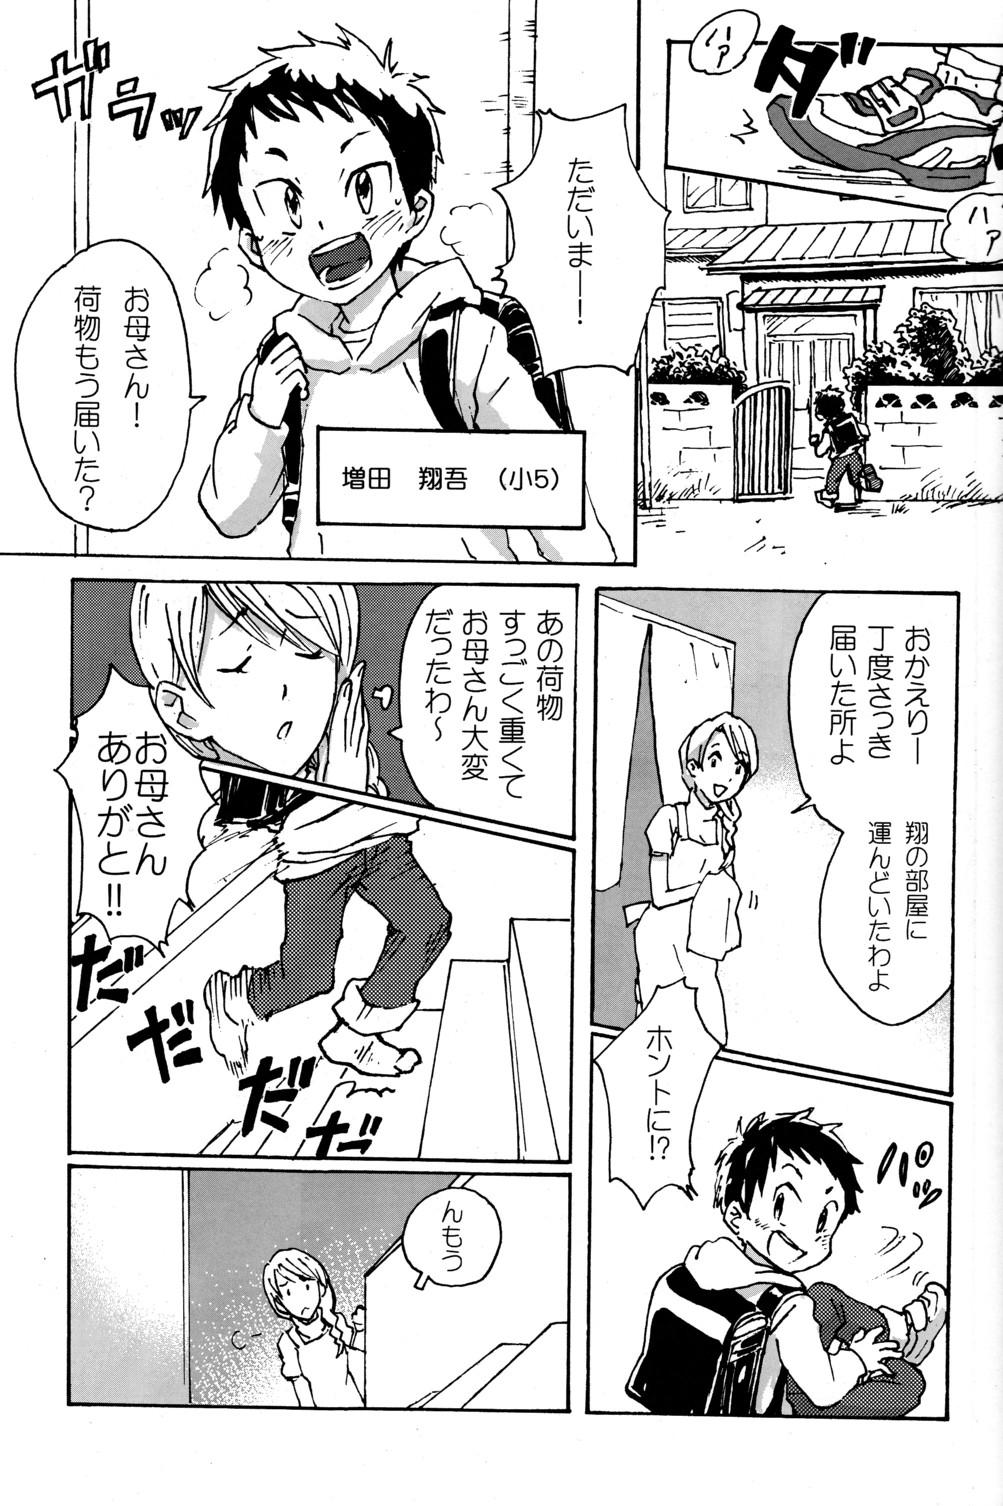 Casado Shota Masu!! - Vocaloid Camwhore - Page 7